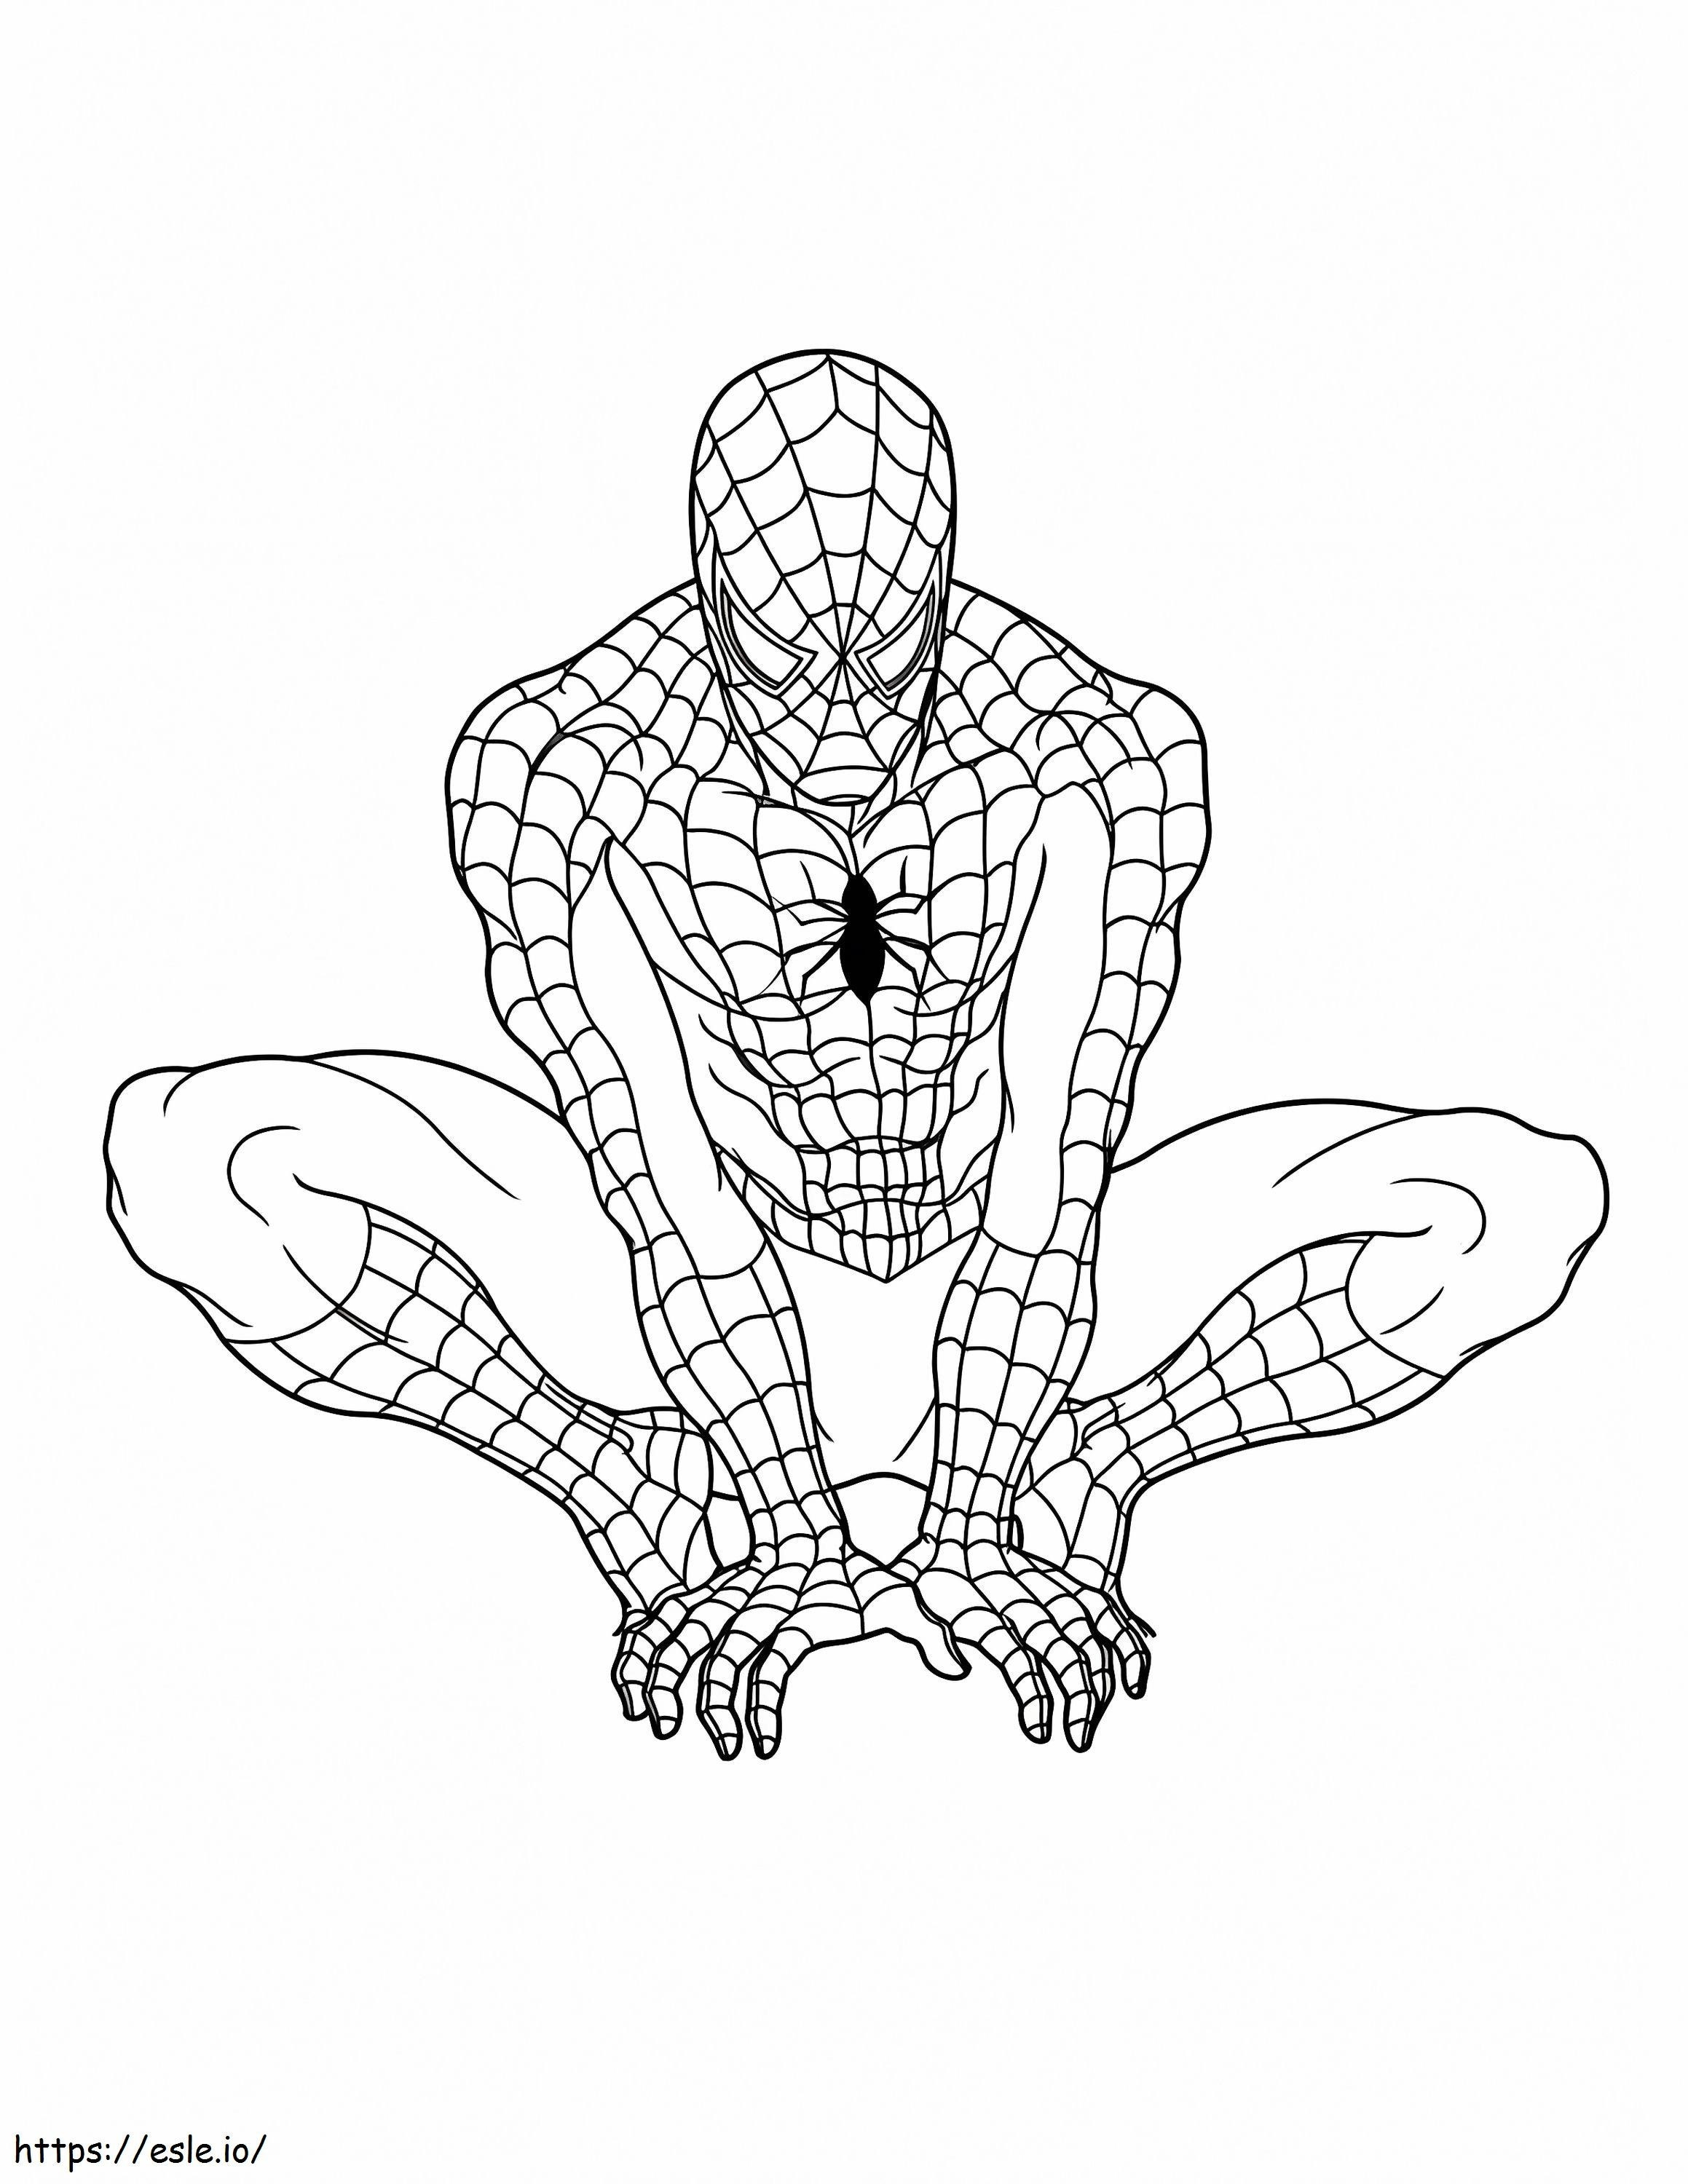 Gráficos gratuitos do Homem-Aranha para colorir